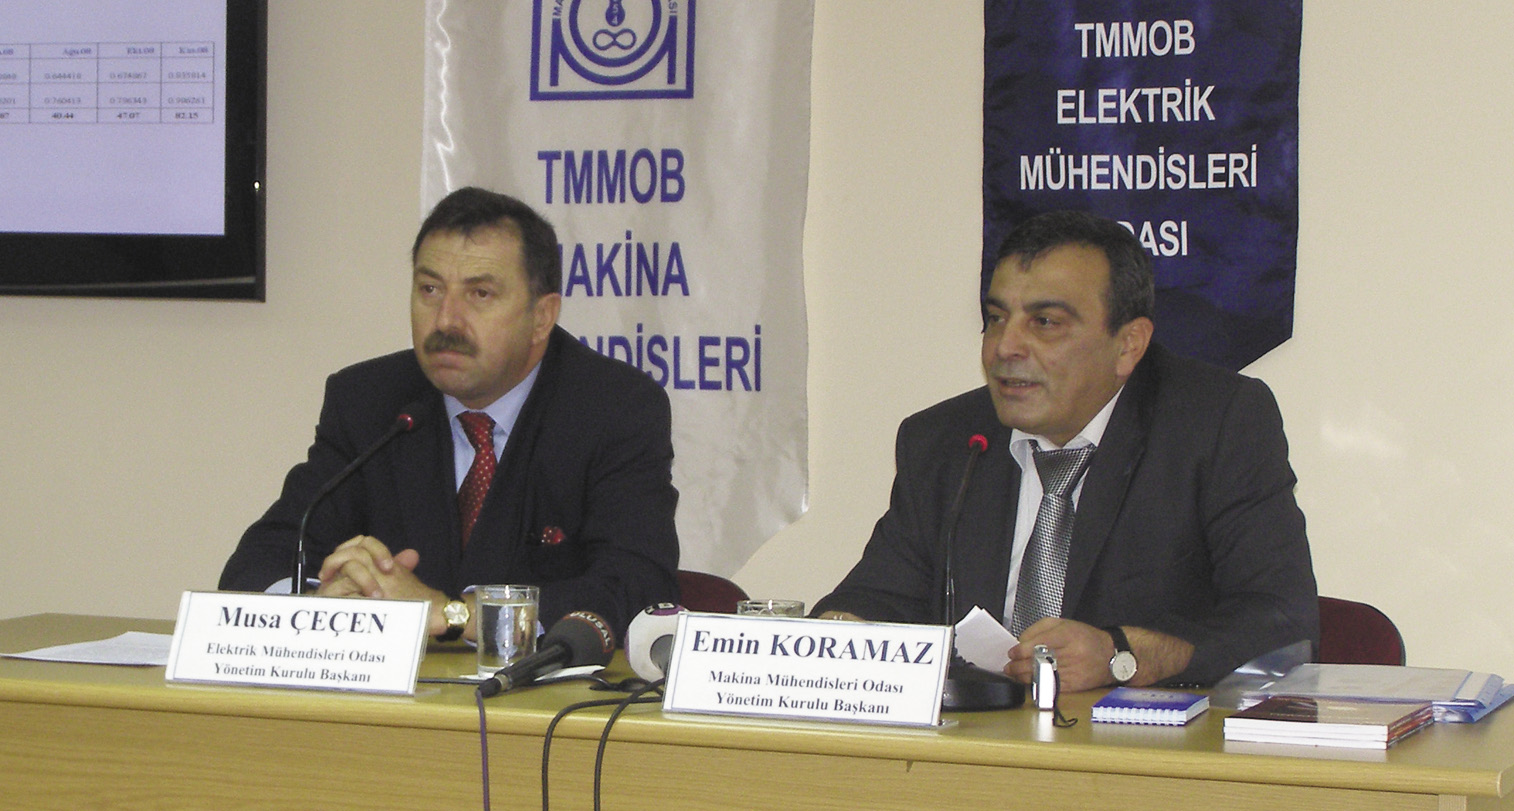 Enerji ve Tabii Kaynaklar Bakanı Hilmi Güler, 3 Kasım günü BOTAŞ Genel Müdürü Saltuk Düzyol ile birlikte düzenlediği basın toplantısında, yapılan zamların petrol ve döviz kurundaki artışlara dayalı